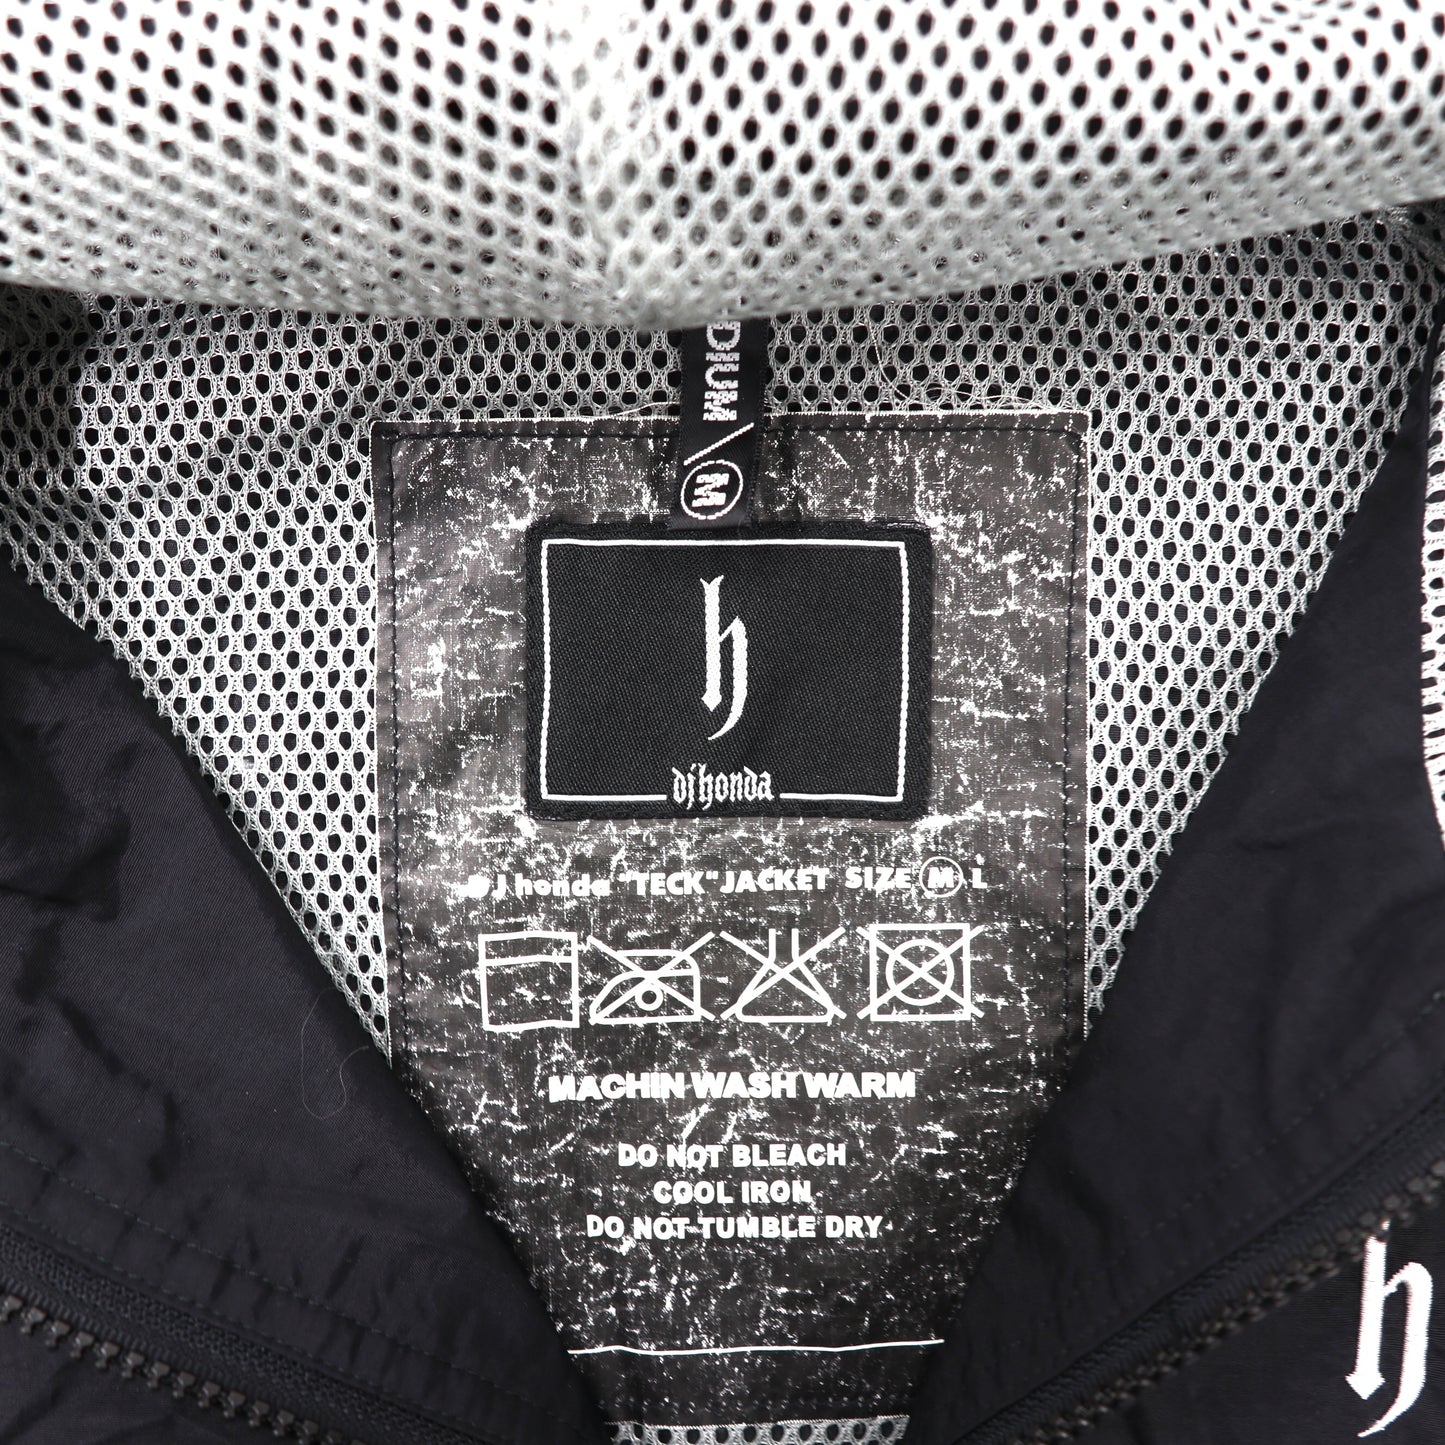 DJ honda ナイロンジャケット M ブラック 袖ロゴ TECH JACKET 90年代